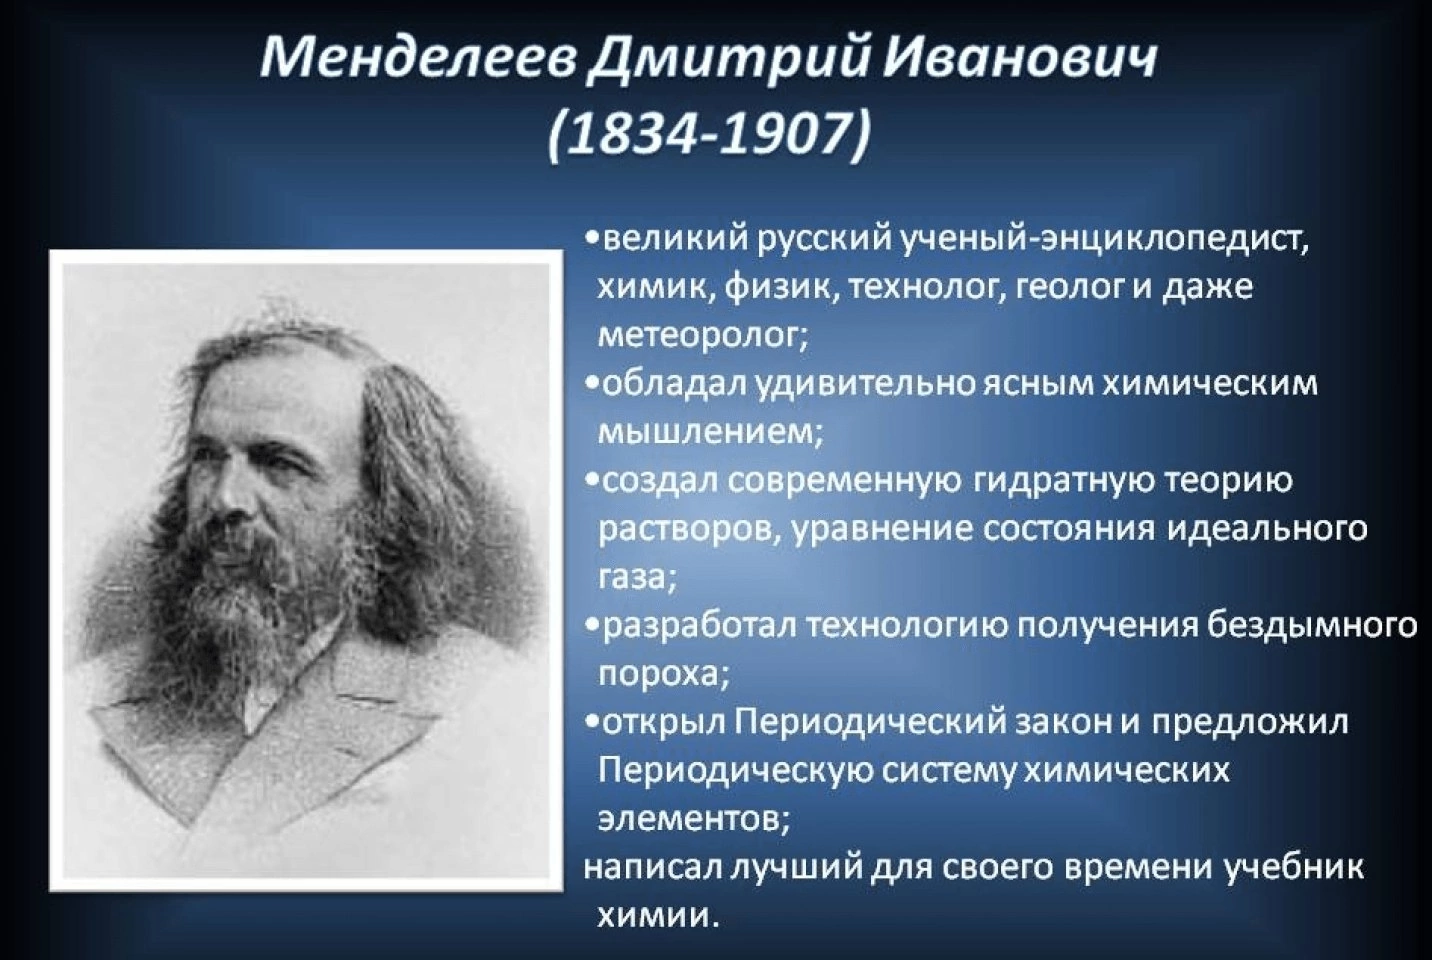 Какой выдающийся русский ученый энциклопедист. Словесный портрет Менделеева.